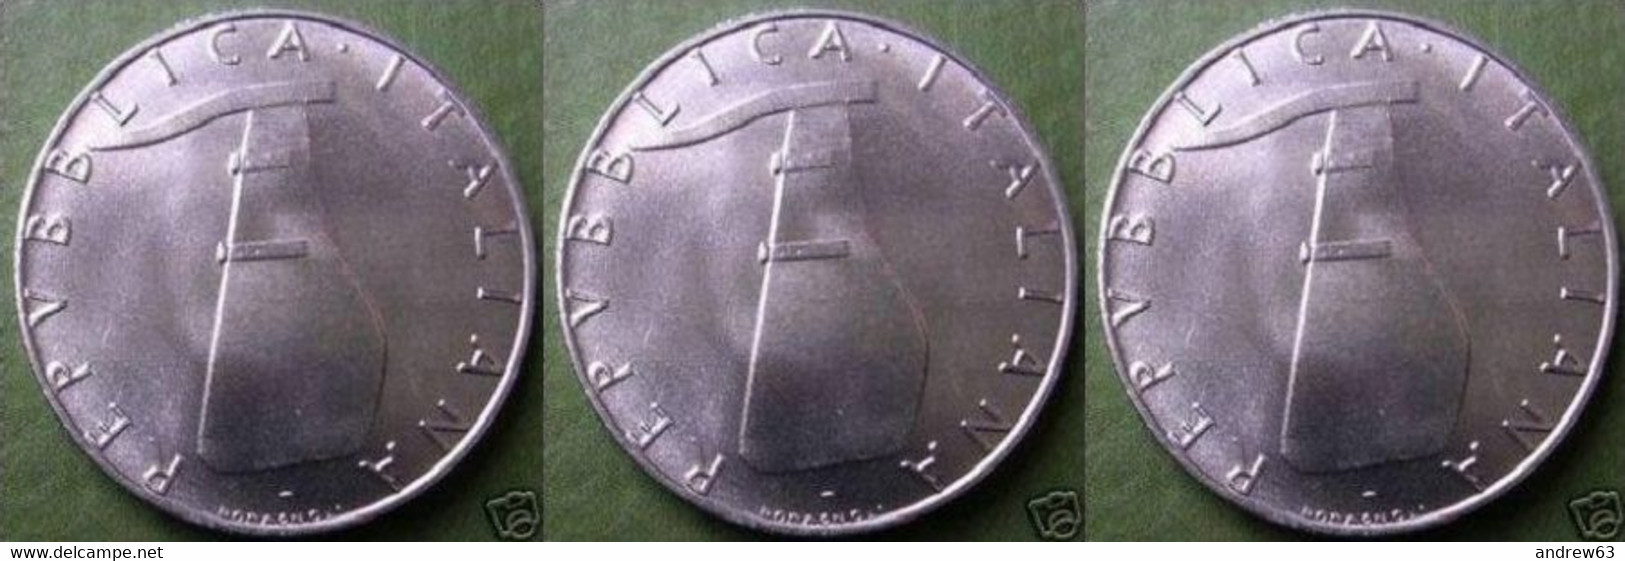 ITALIA - Lire 5 1993 - FDC/Unc Da Rotolino/from Roll 3 Monete/3 Coins - 5 Liras